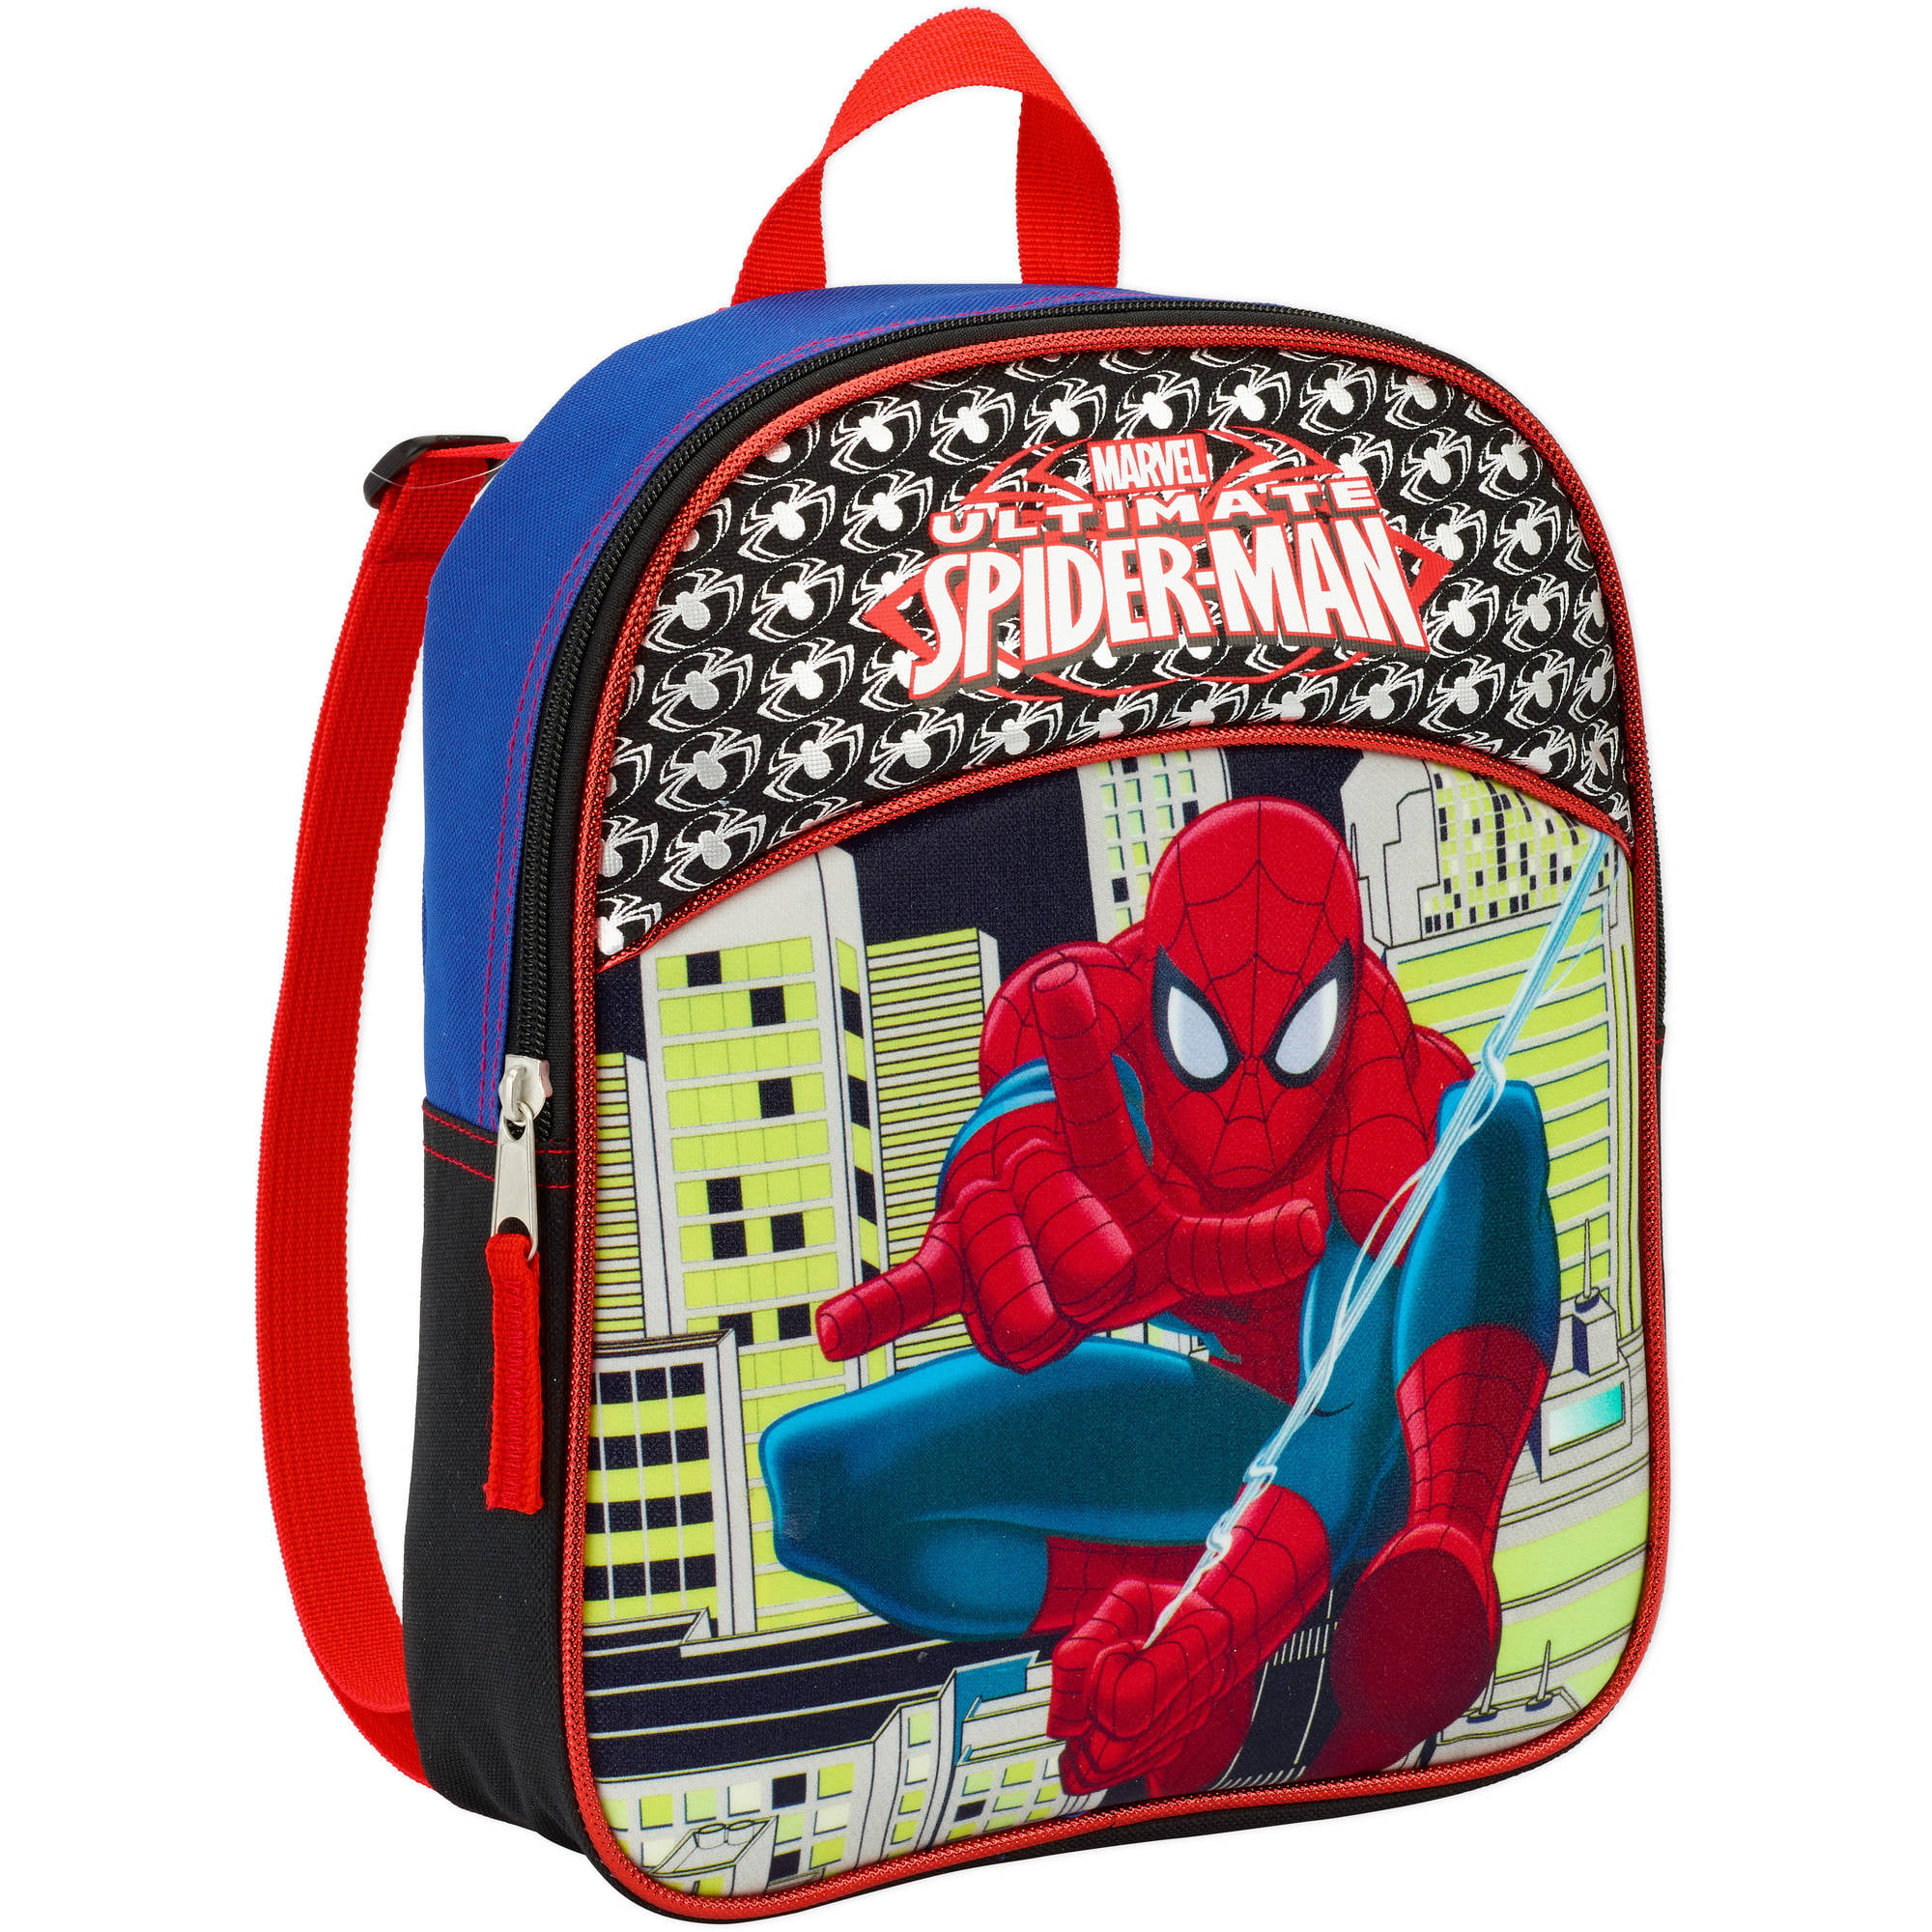 Marvel Spiderman Ultimate Spiderman Kids Backpack School Bag New